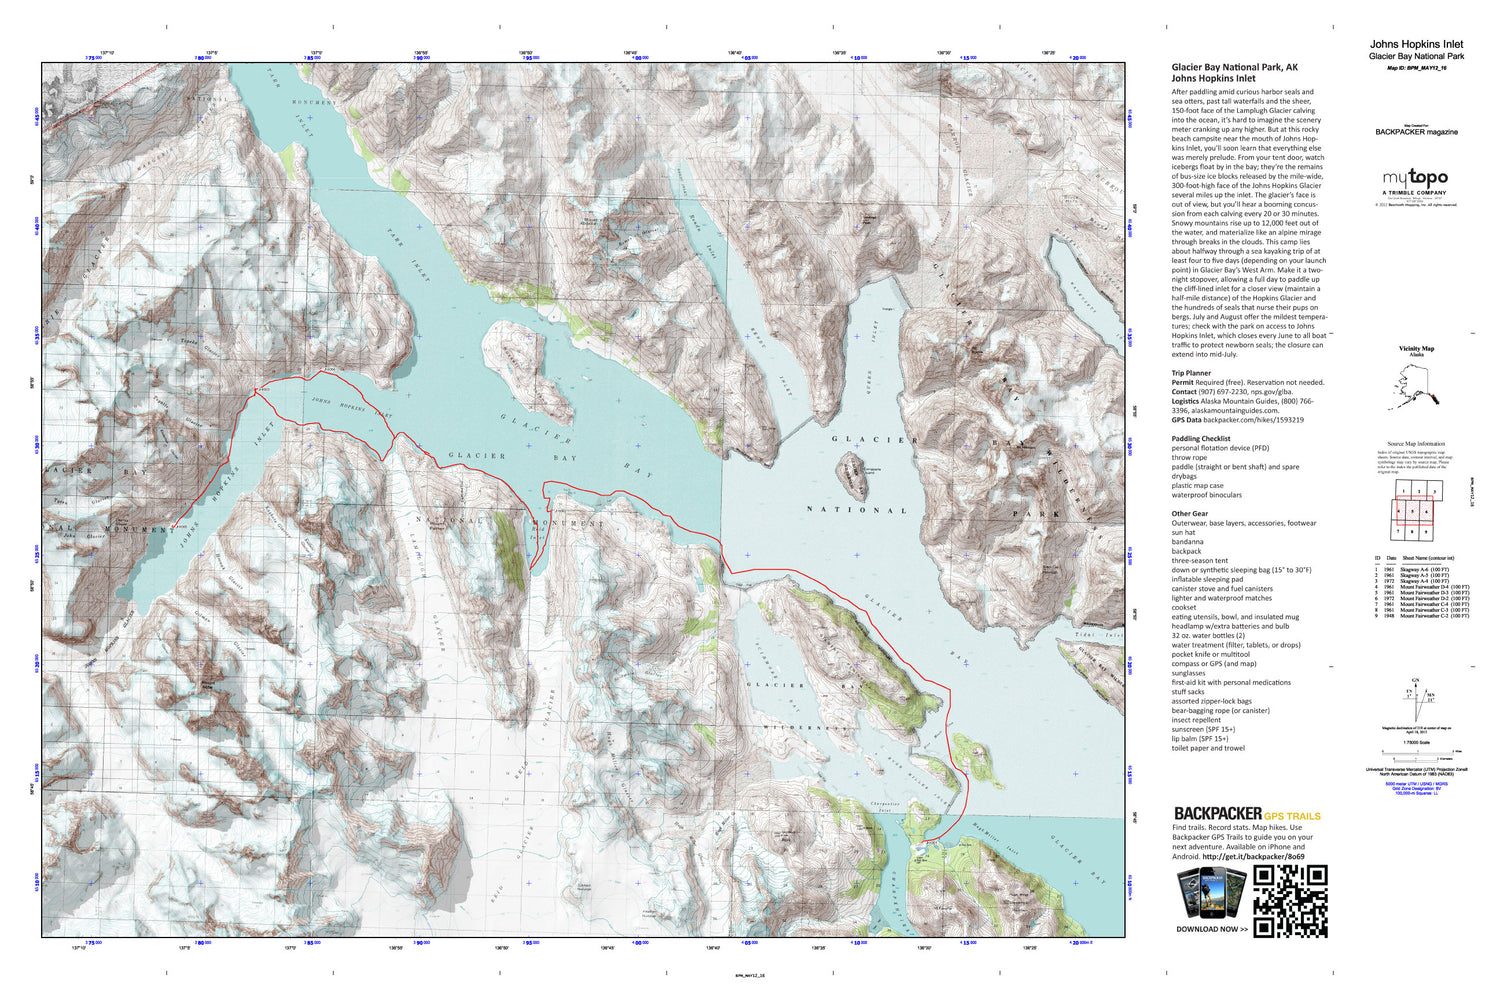 Johns Hopkins Inlet Map (Glacier Bay National Park, Alaska) Image